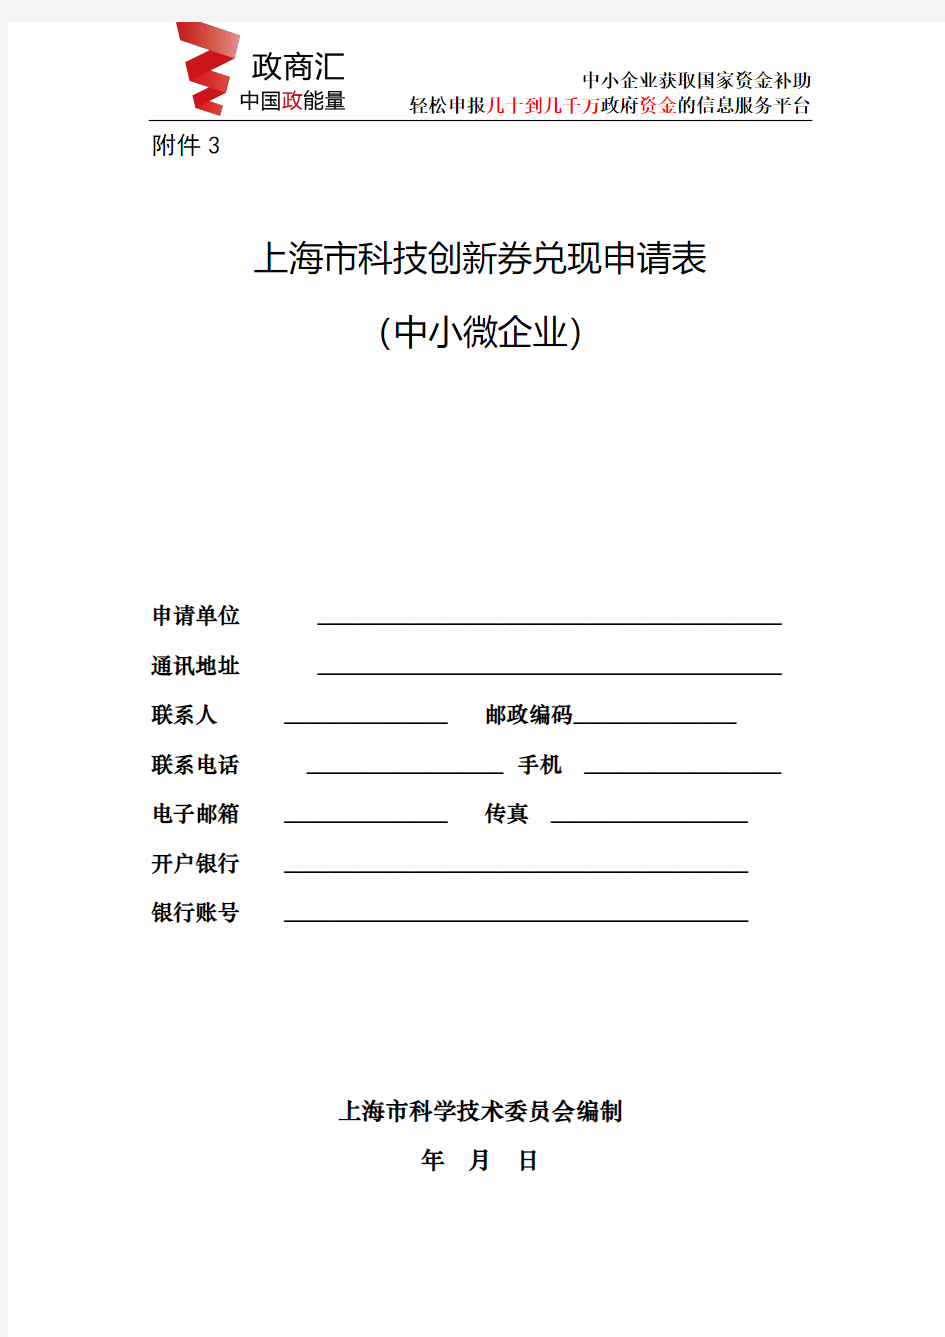 上海市科技创新券兑现申请表(中小微企业)